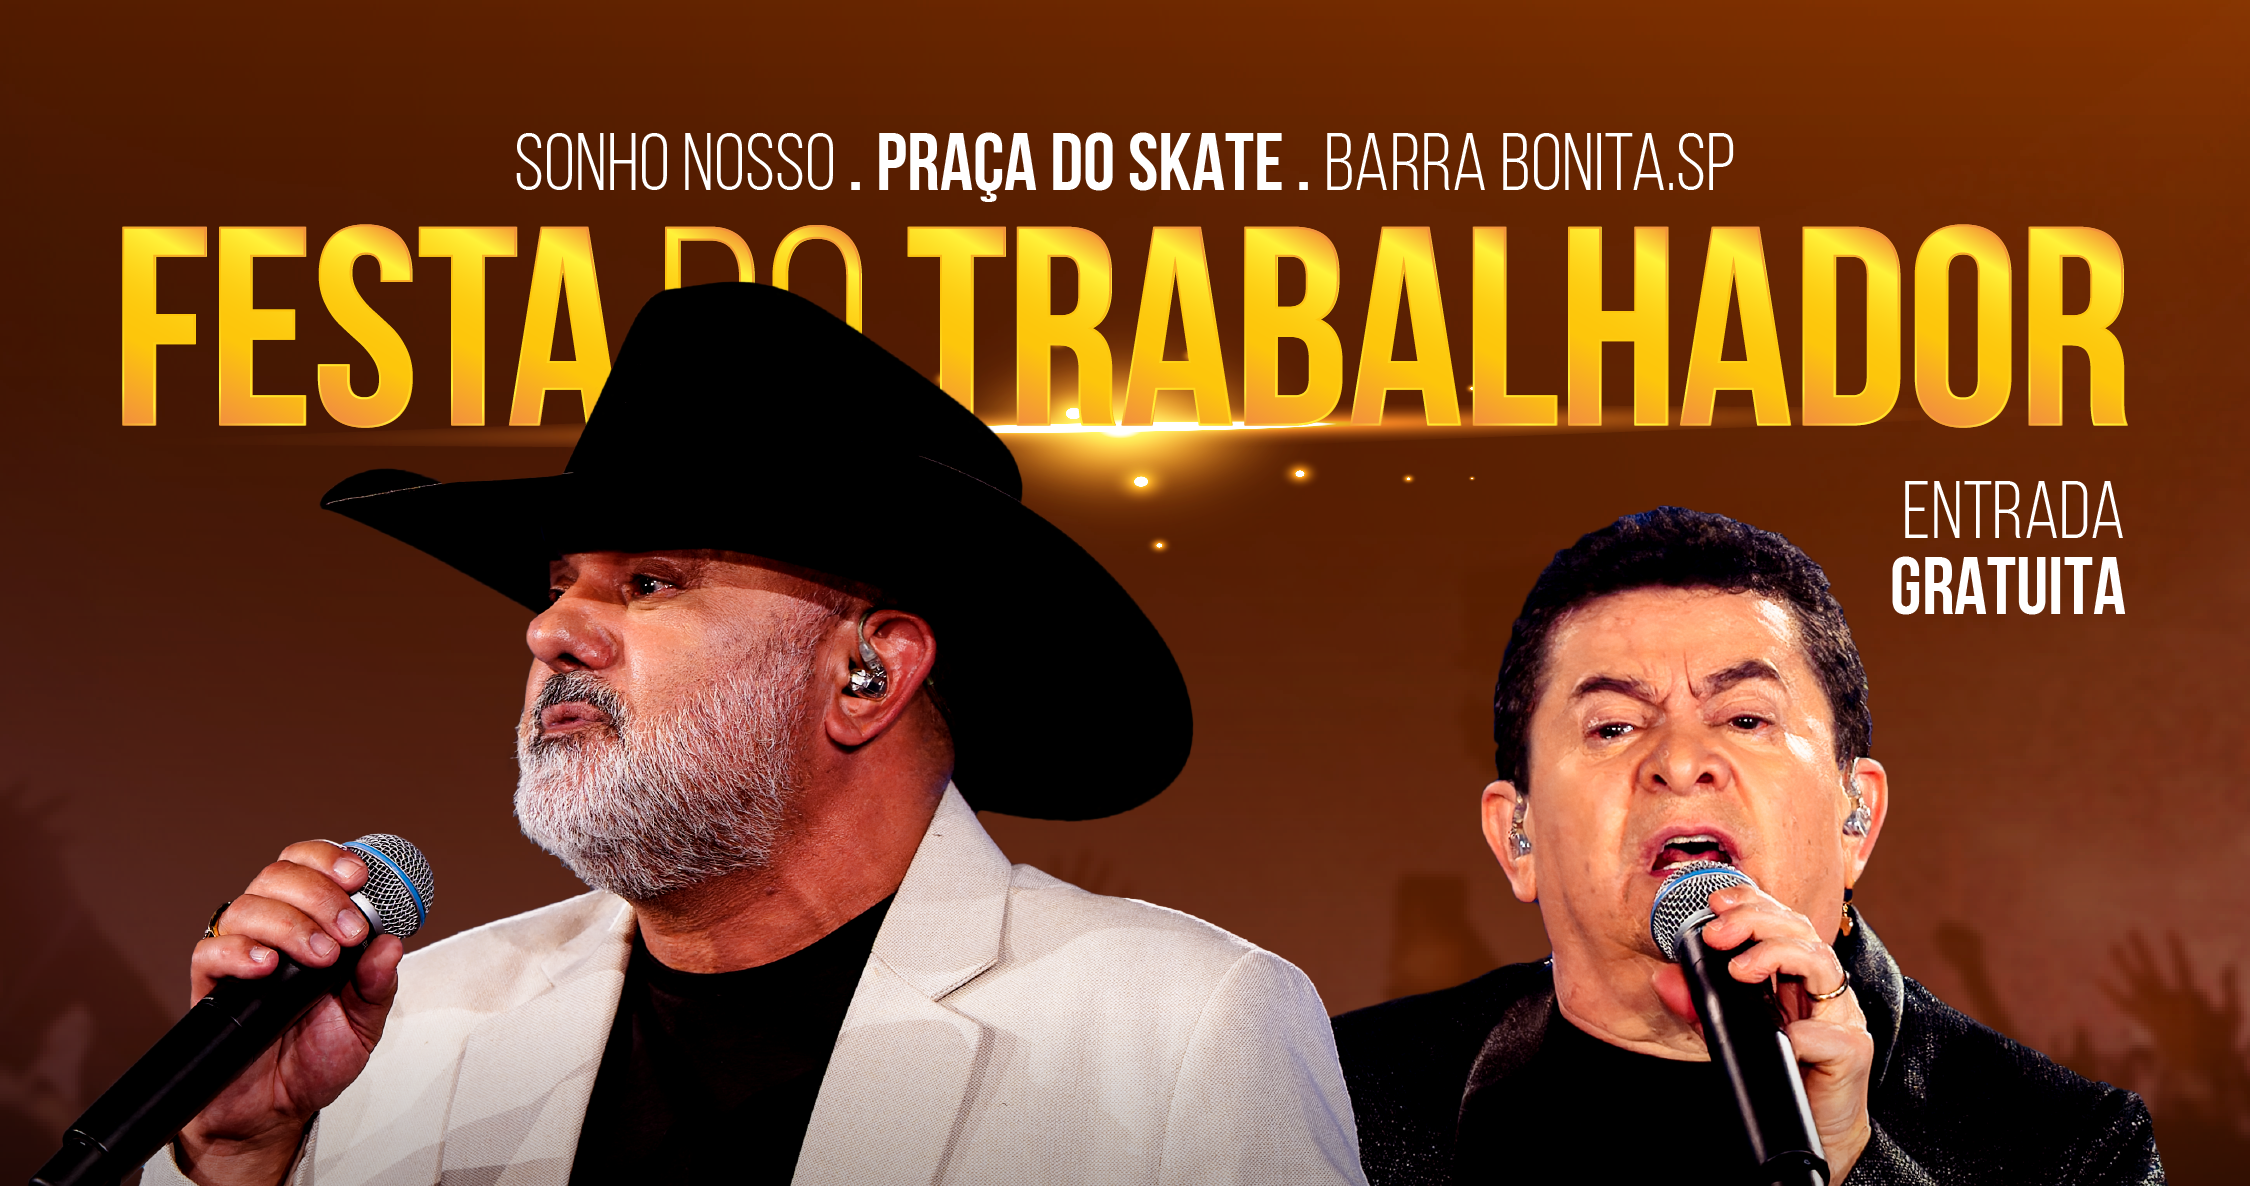 PRIMEIRO DE MAIO TERÁ SHOW COM RIO NEGRO & SOLIMÕES NA FESTA DO TRABALHADOR DE BARRA BONITA